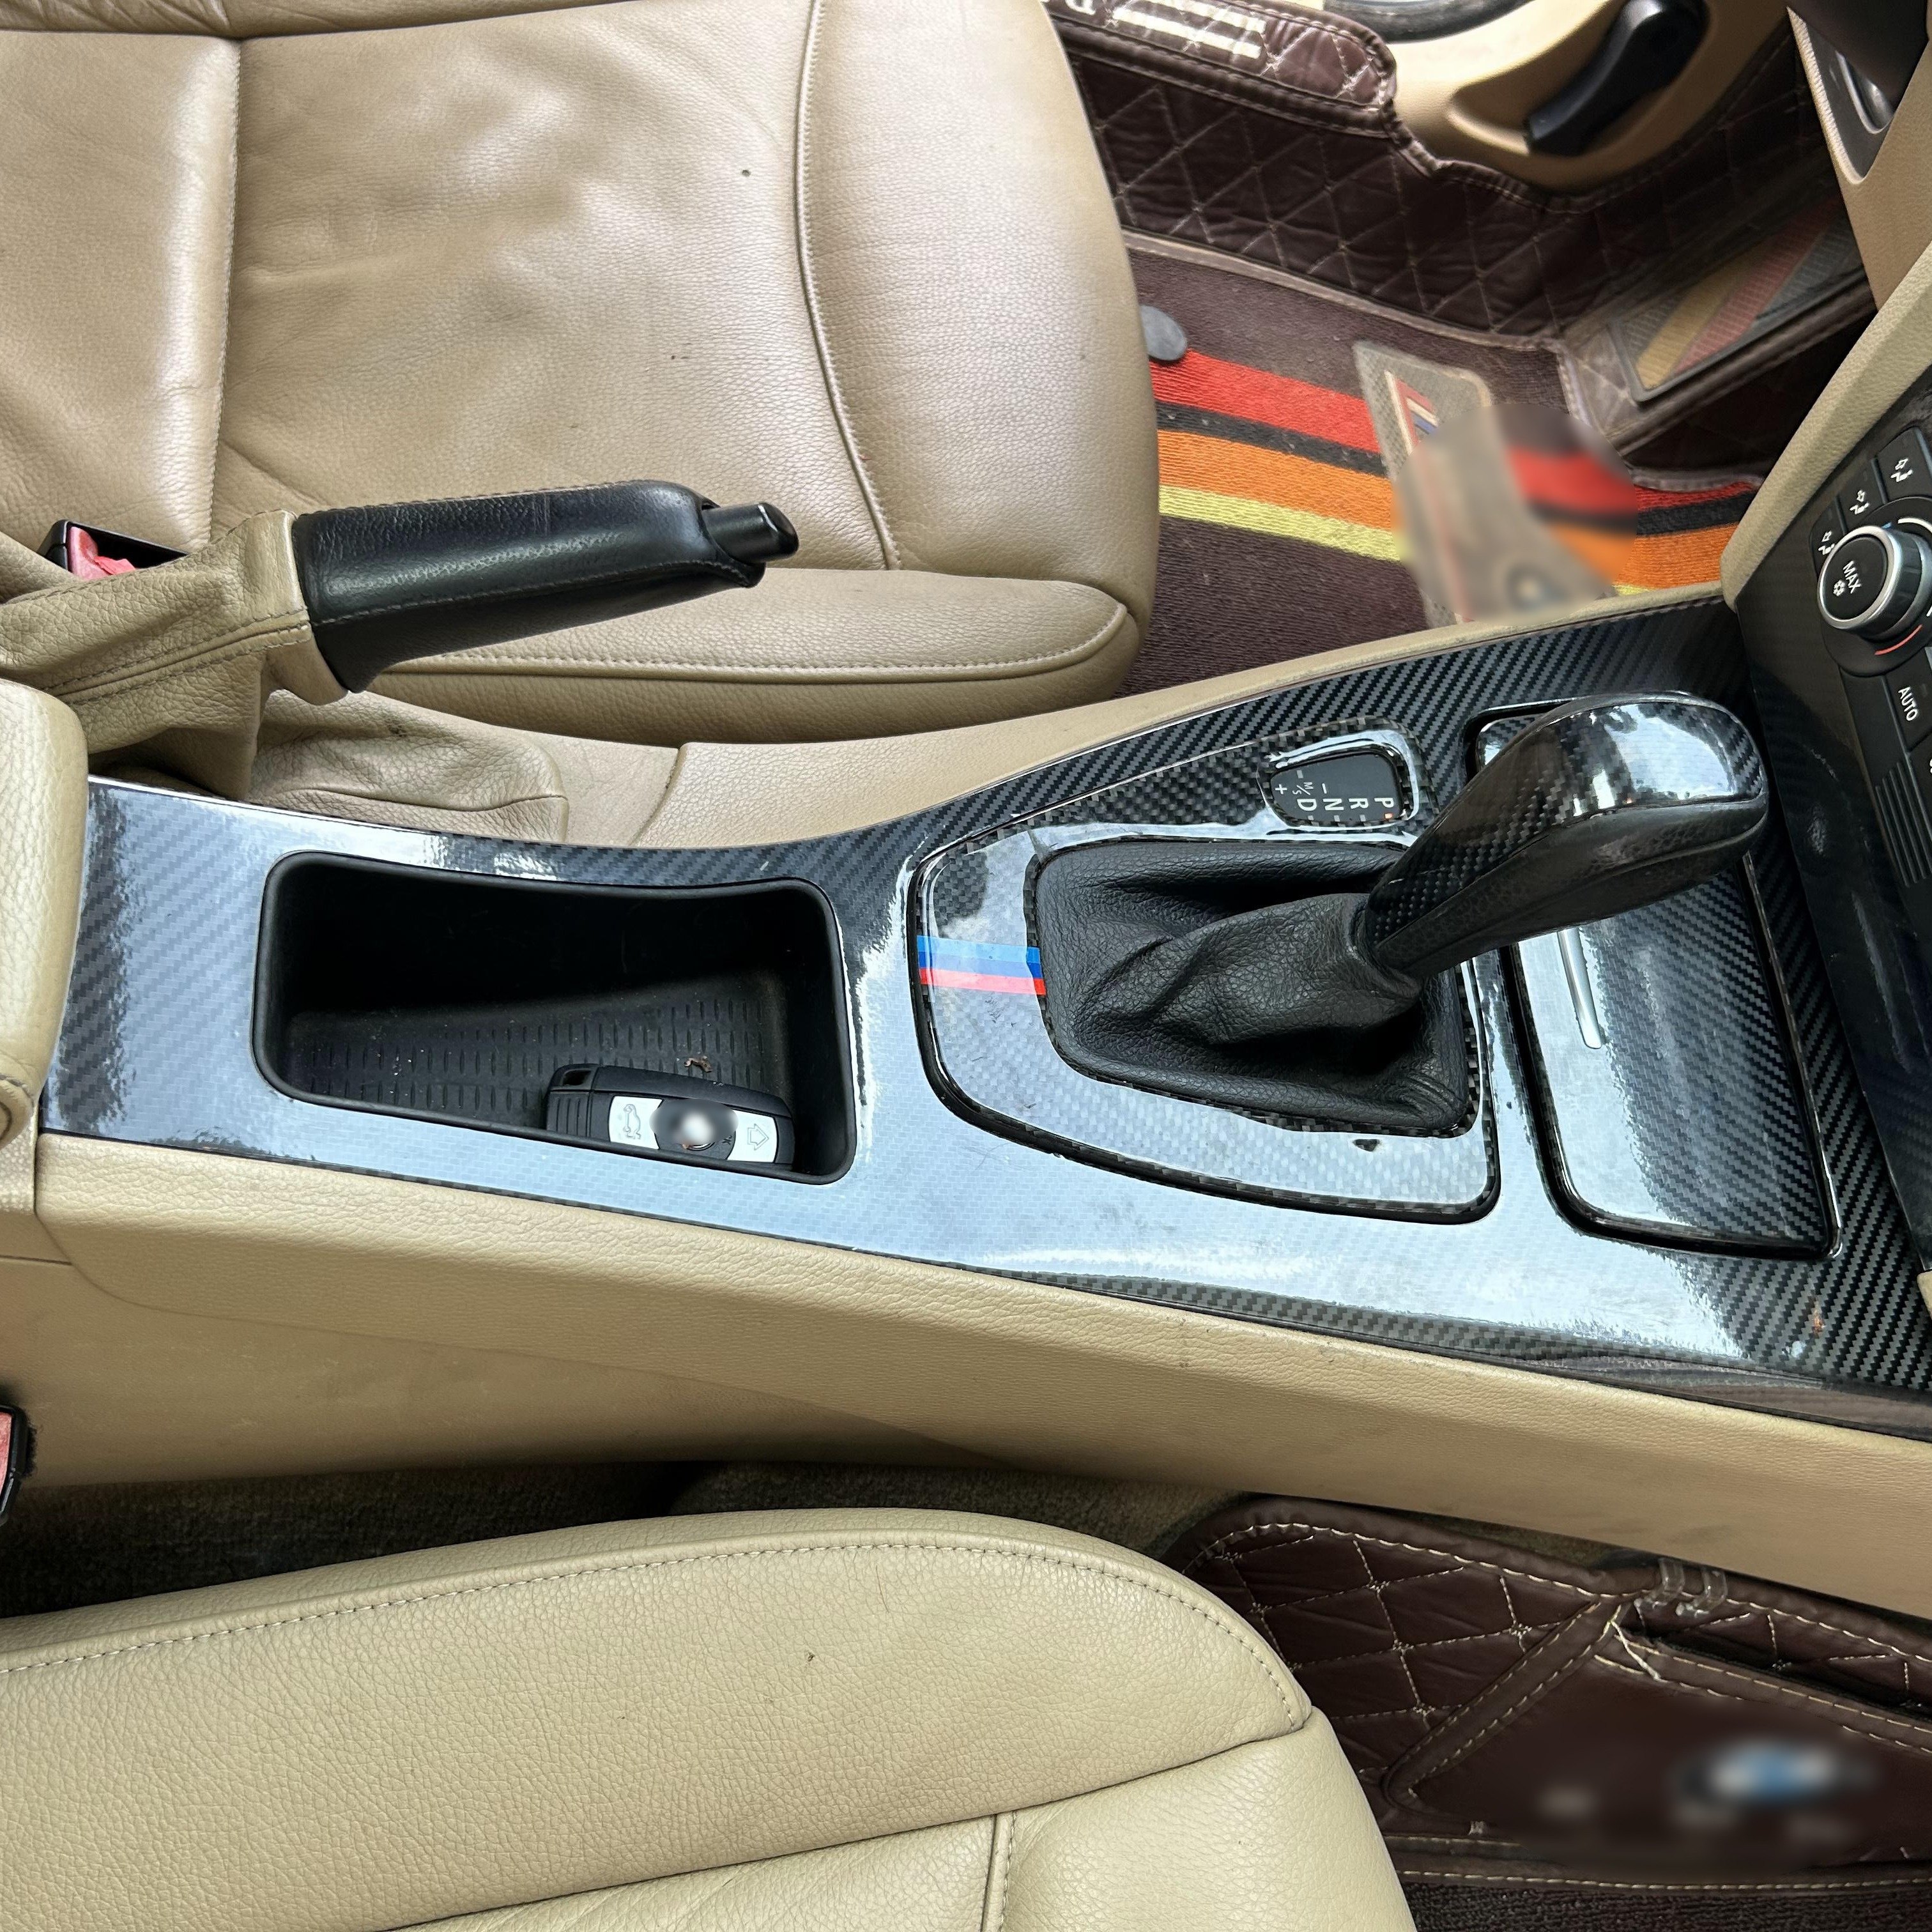 Für Cadillac SRX Innen Zentrale Steuerung Panel Tür Griff 3D/5D Carbon  Faser Aufkleber Aufkleber Auto Styling Zubehör Von 18,81 €